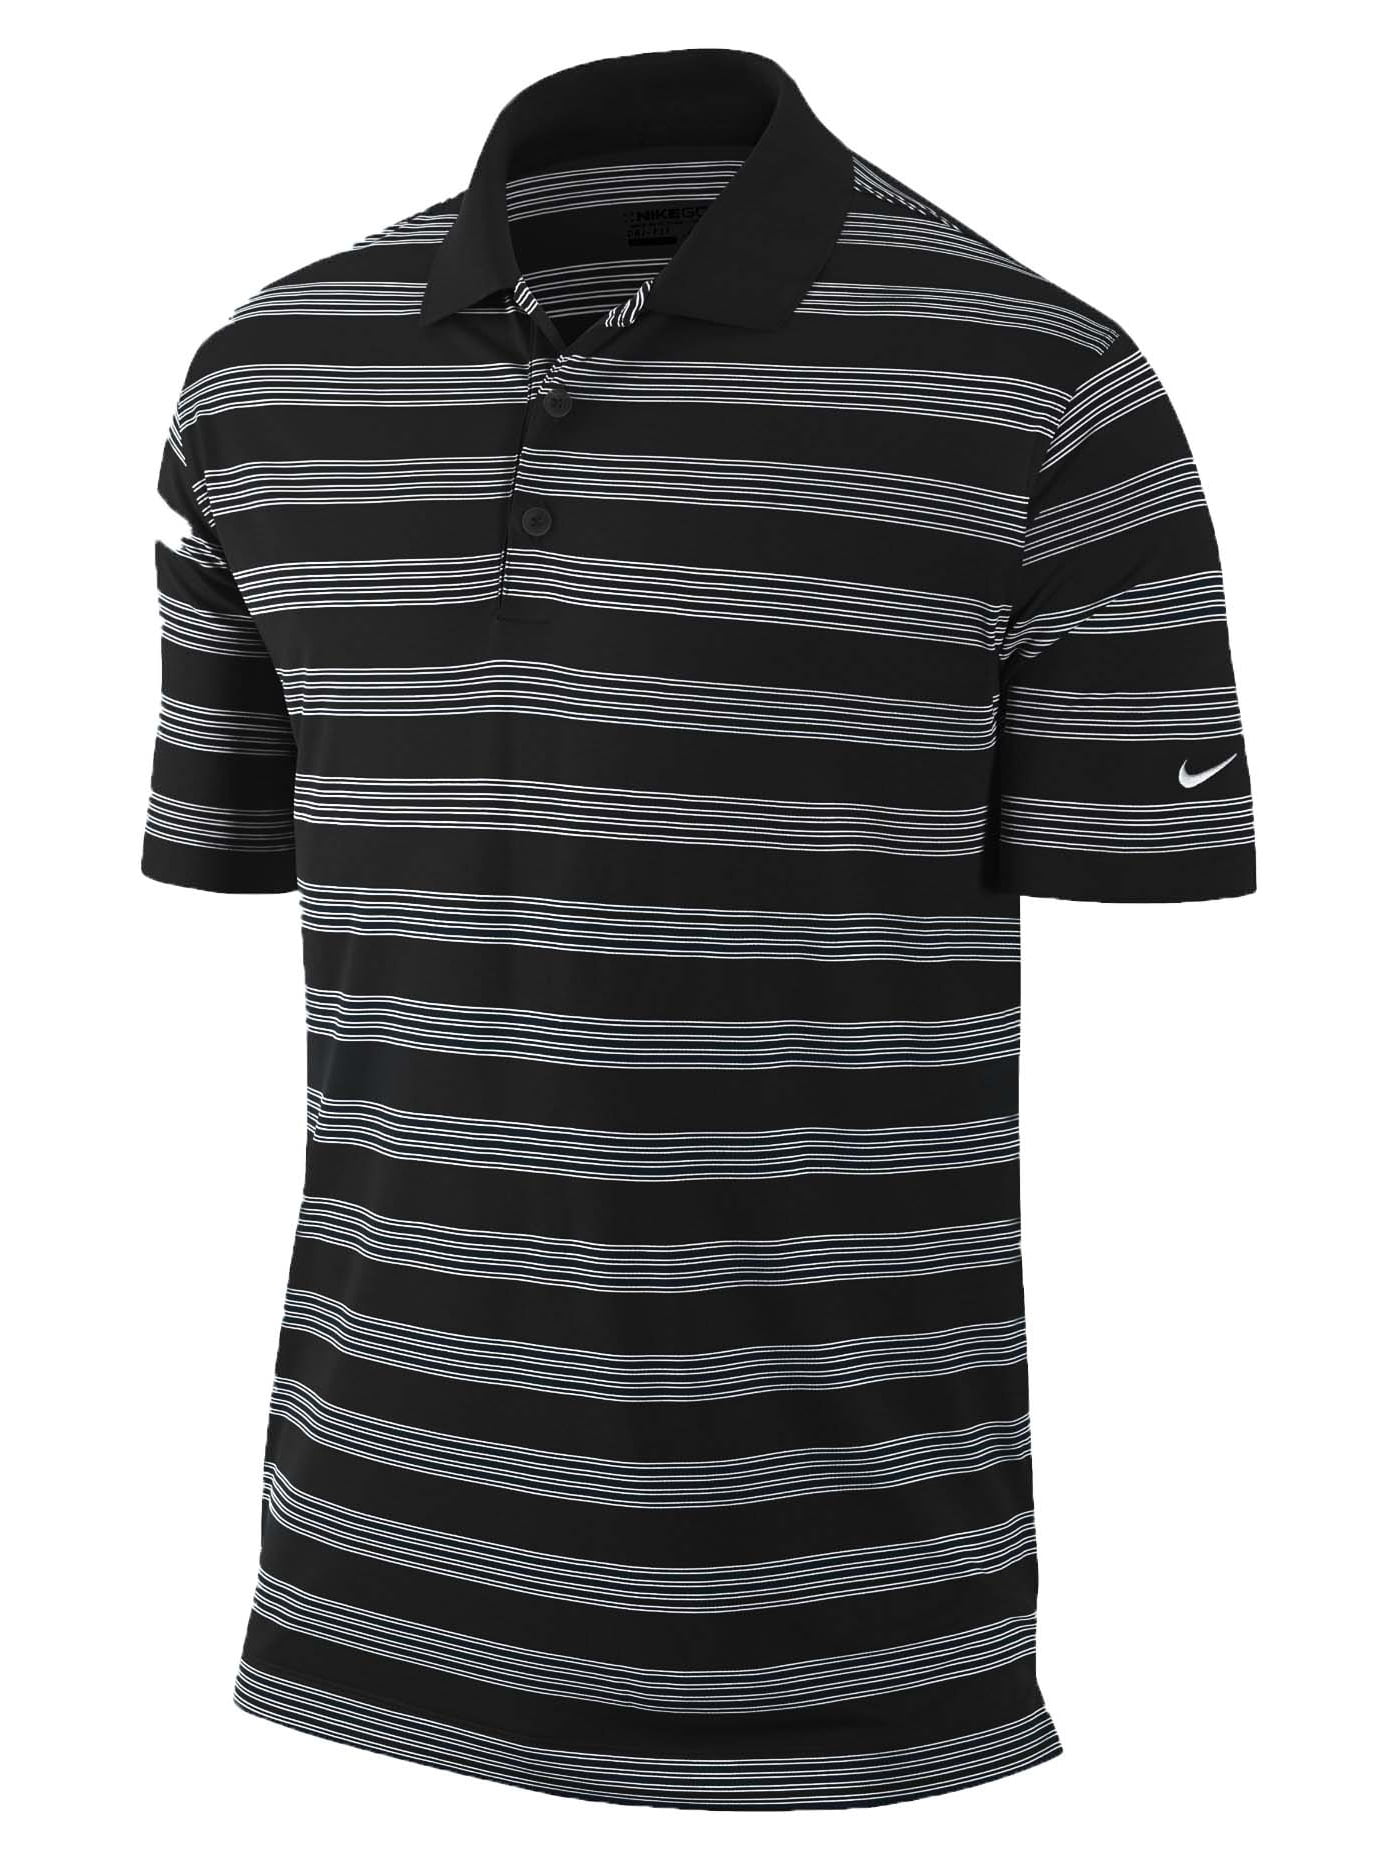 Nike Men's Dri-Fit Tech Core Stripe Golf Polo Shirt-Black - Walmart.com ...